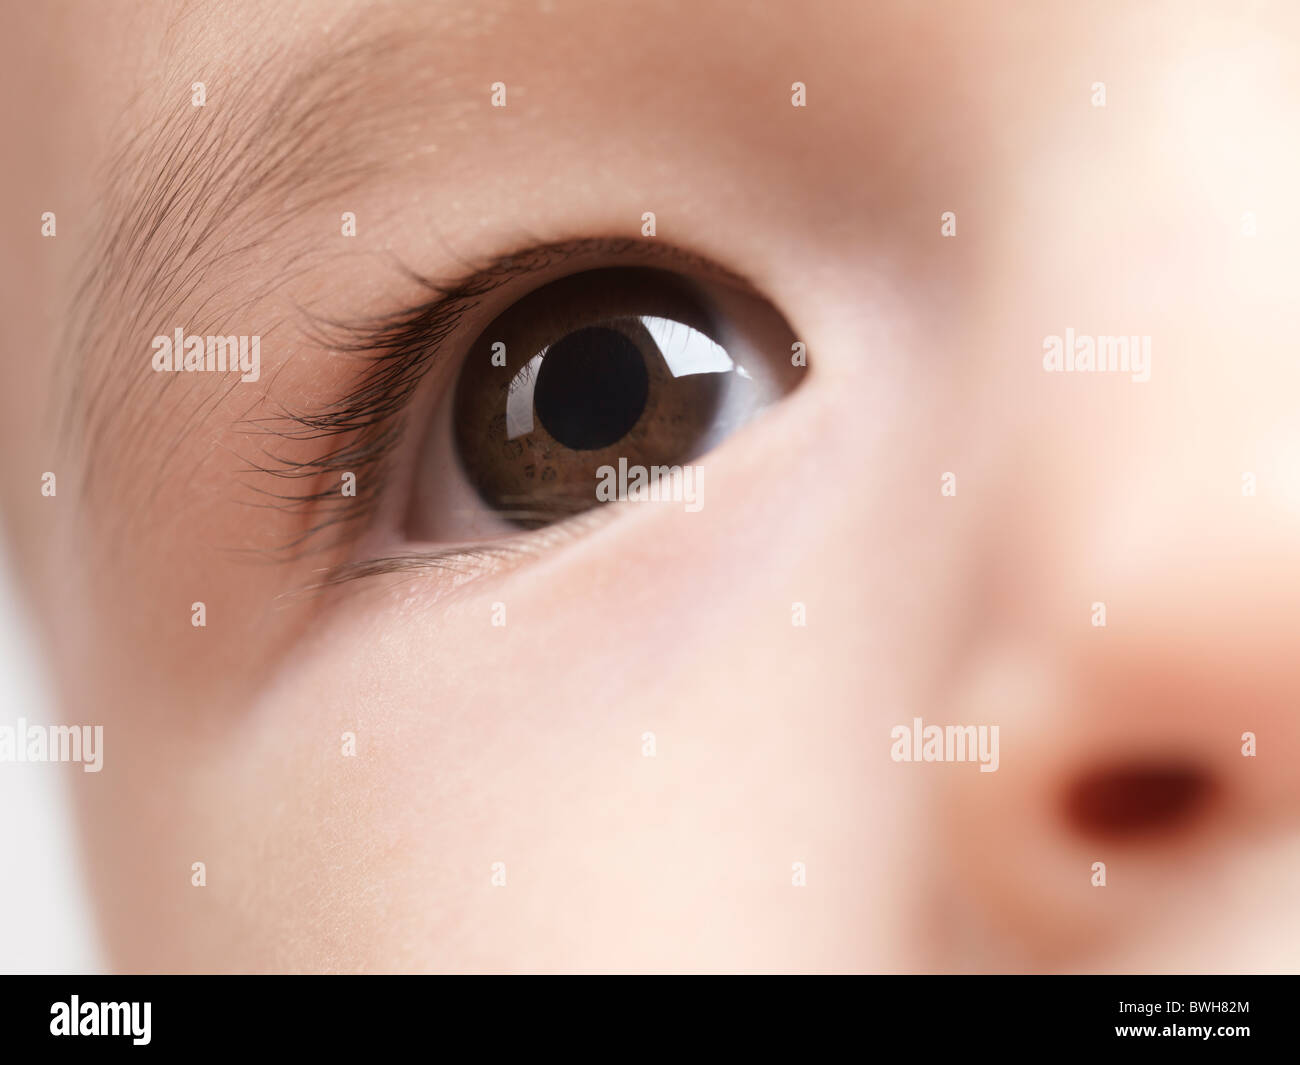 Lizenz erhältlich unter MaximImages.com - Nahaufnahme eines Auges eines sechs Monate alten Jungen Stockfoto